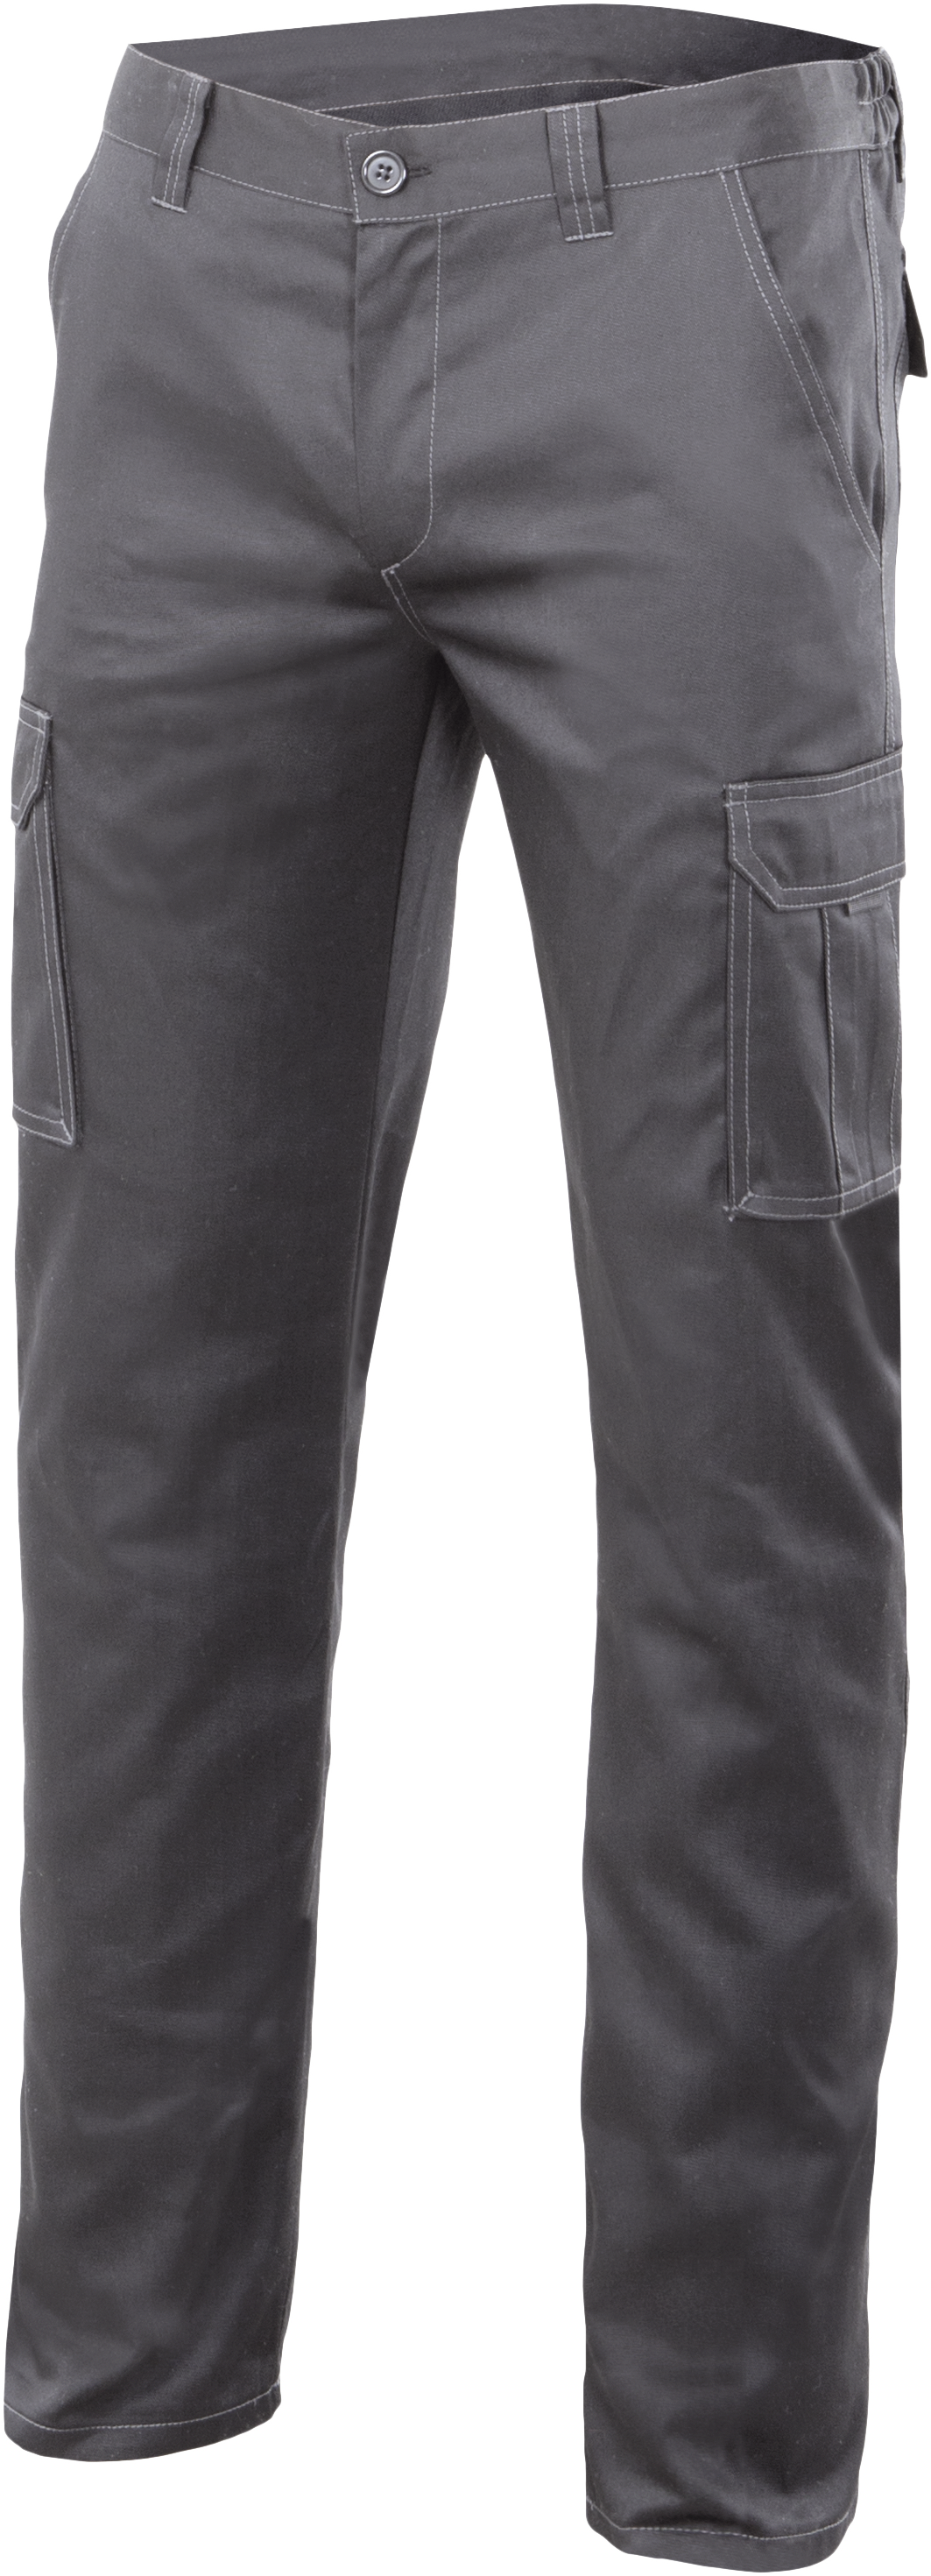 Pantalon gris 103002s txxl